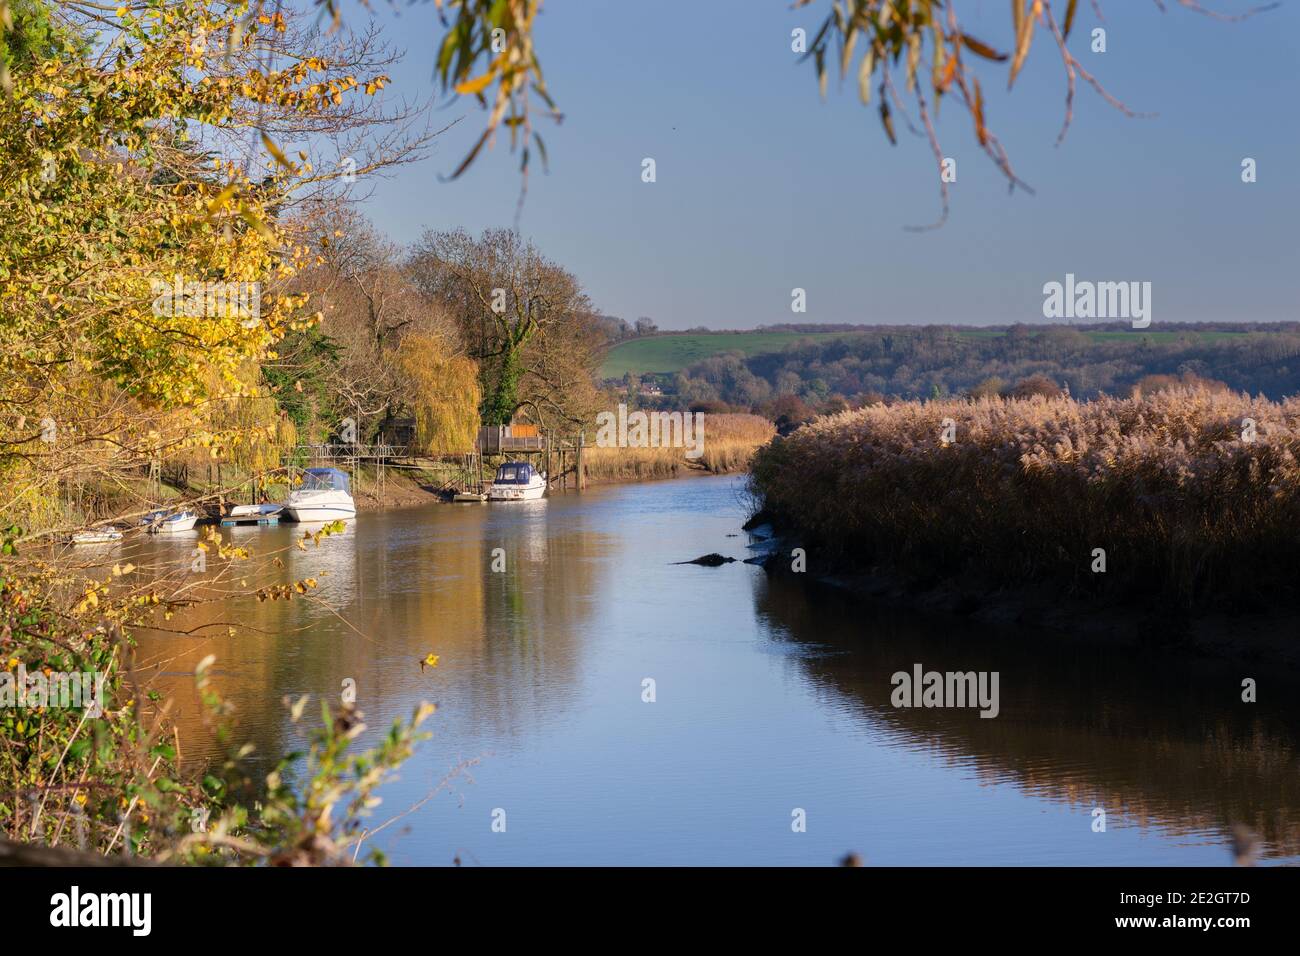 Promenade le long de la rivière Arun, un après-midi d'automne, bateaux amarrés Banque D'Images